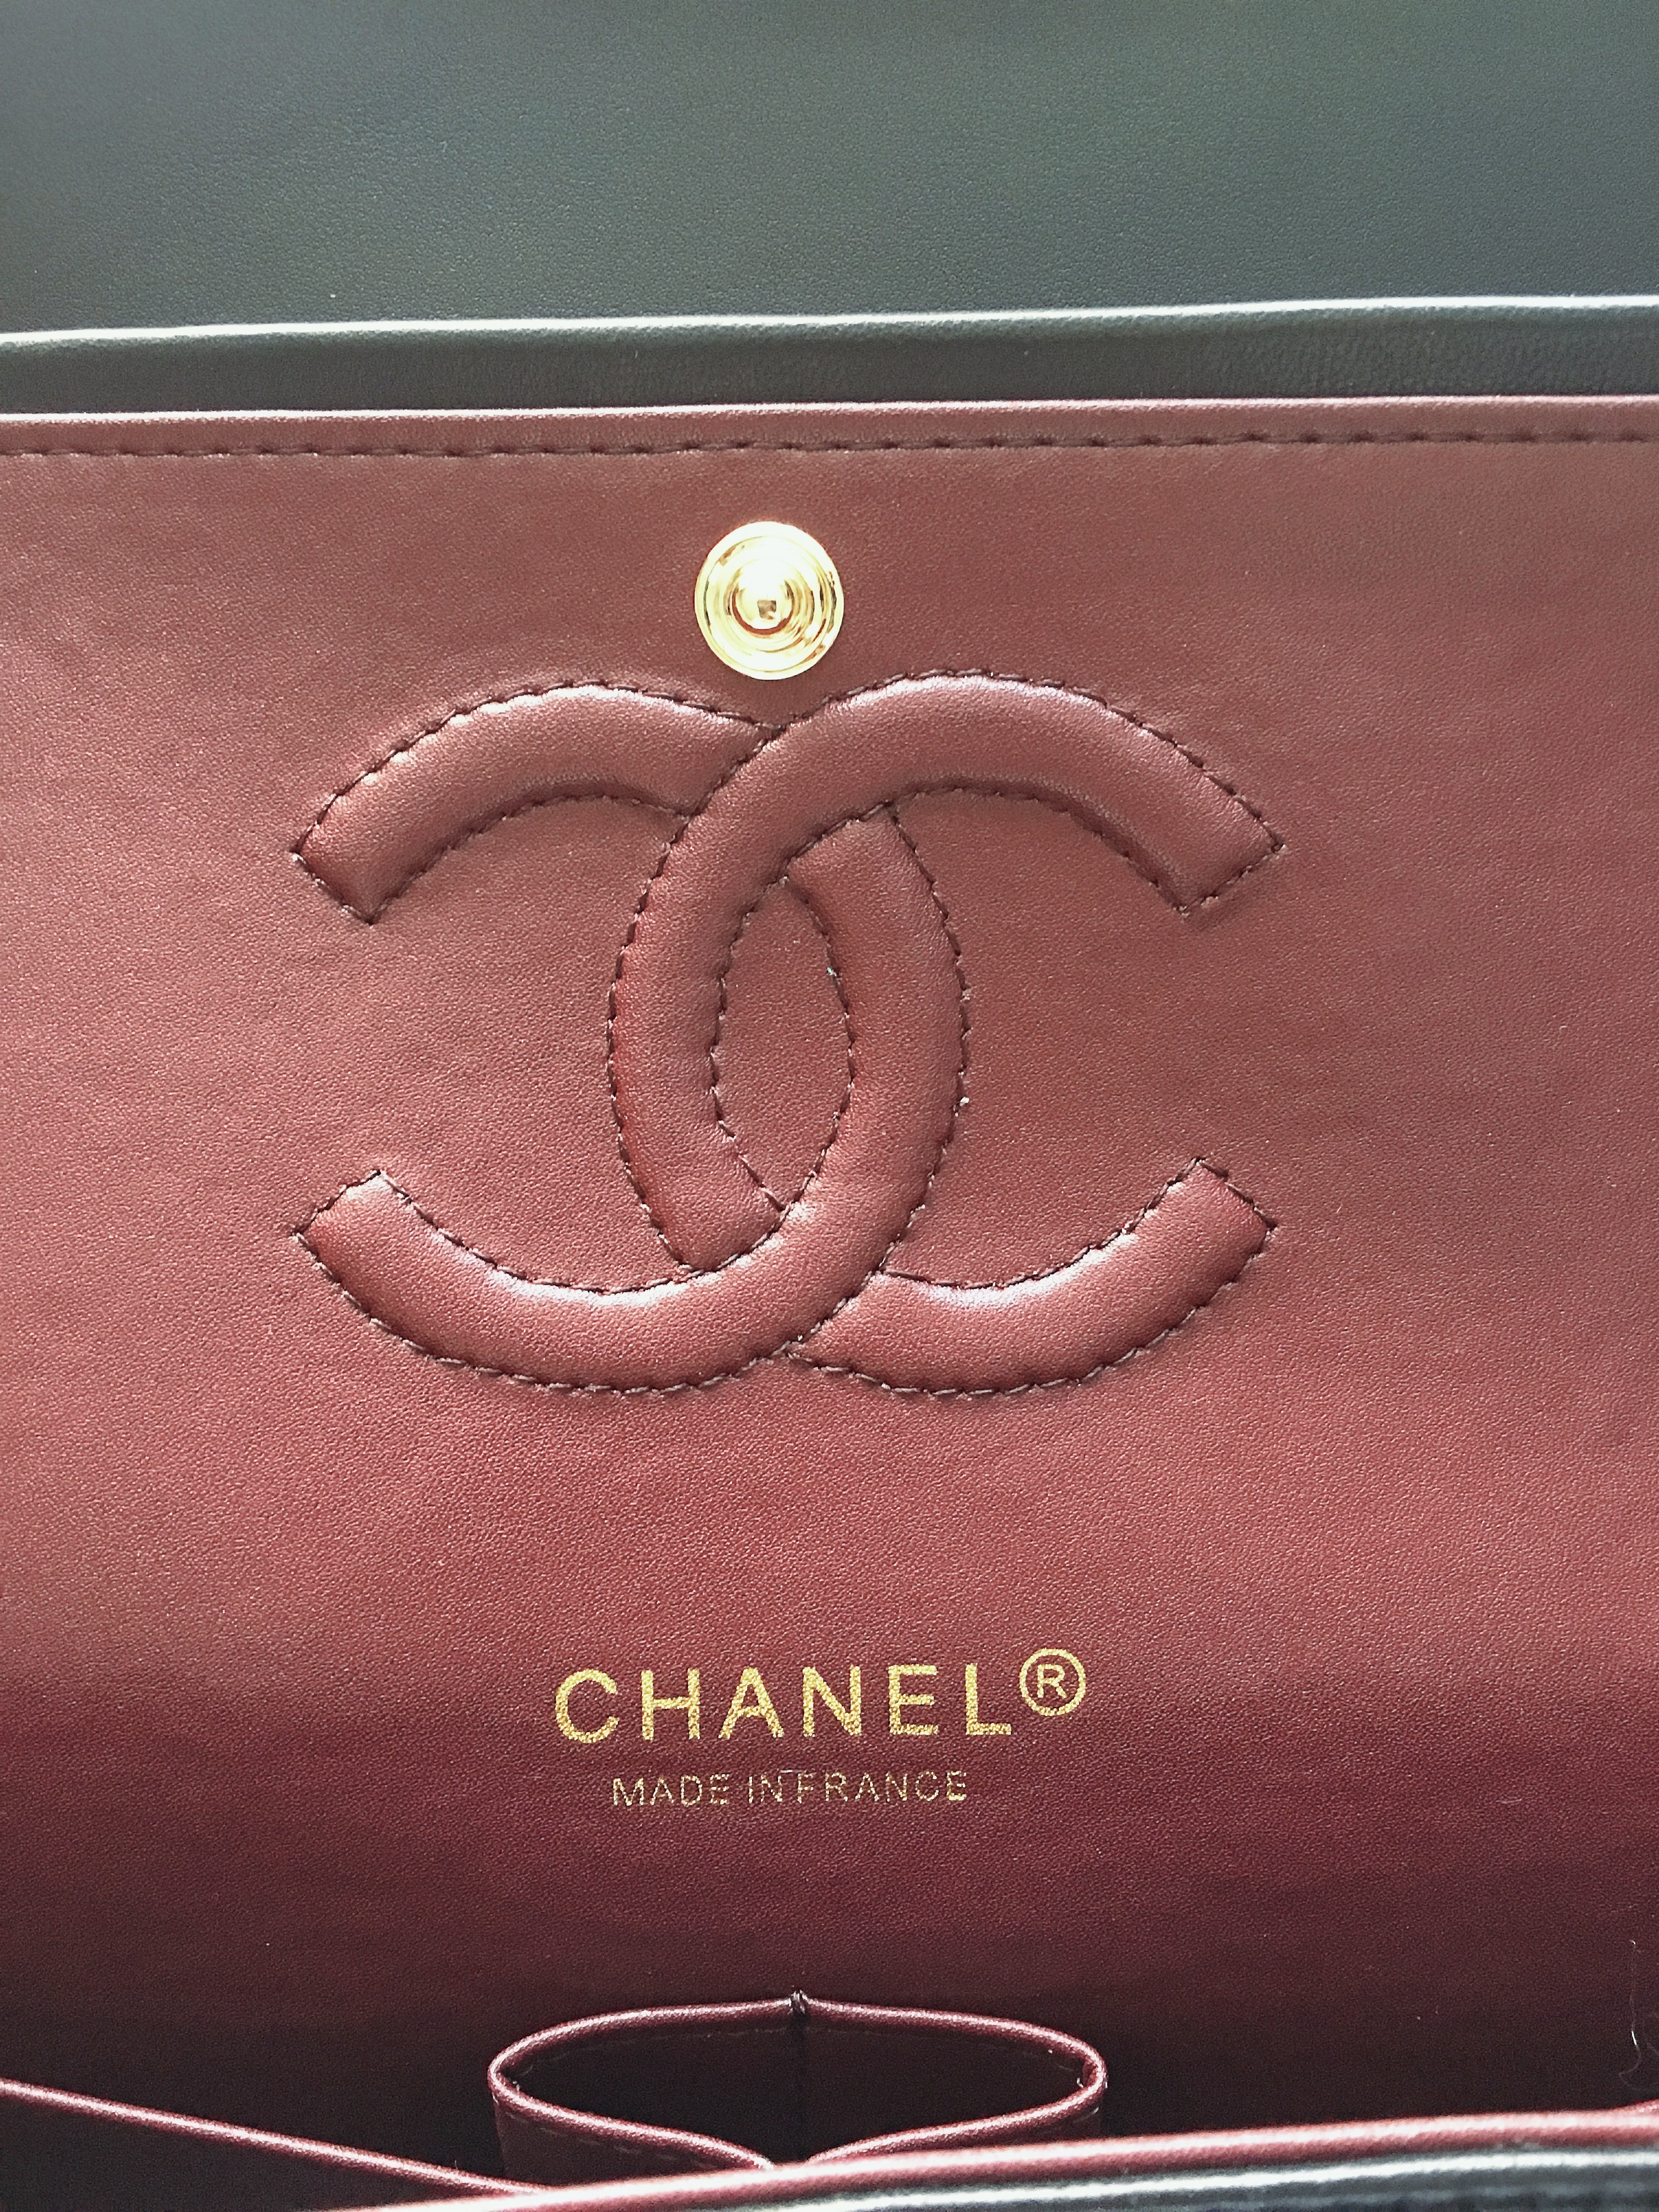 Die 2.55 Tasche von Chanel ist ein waschechtes IT Piece. Die kultige Tasche hat eine schöne Geschichte, die ich im Blogpost erzähle und top Pflegetipps gebe